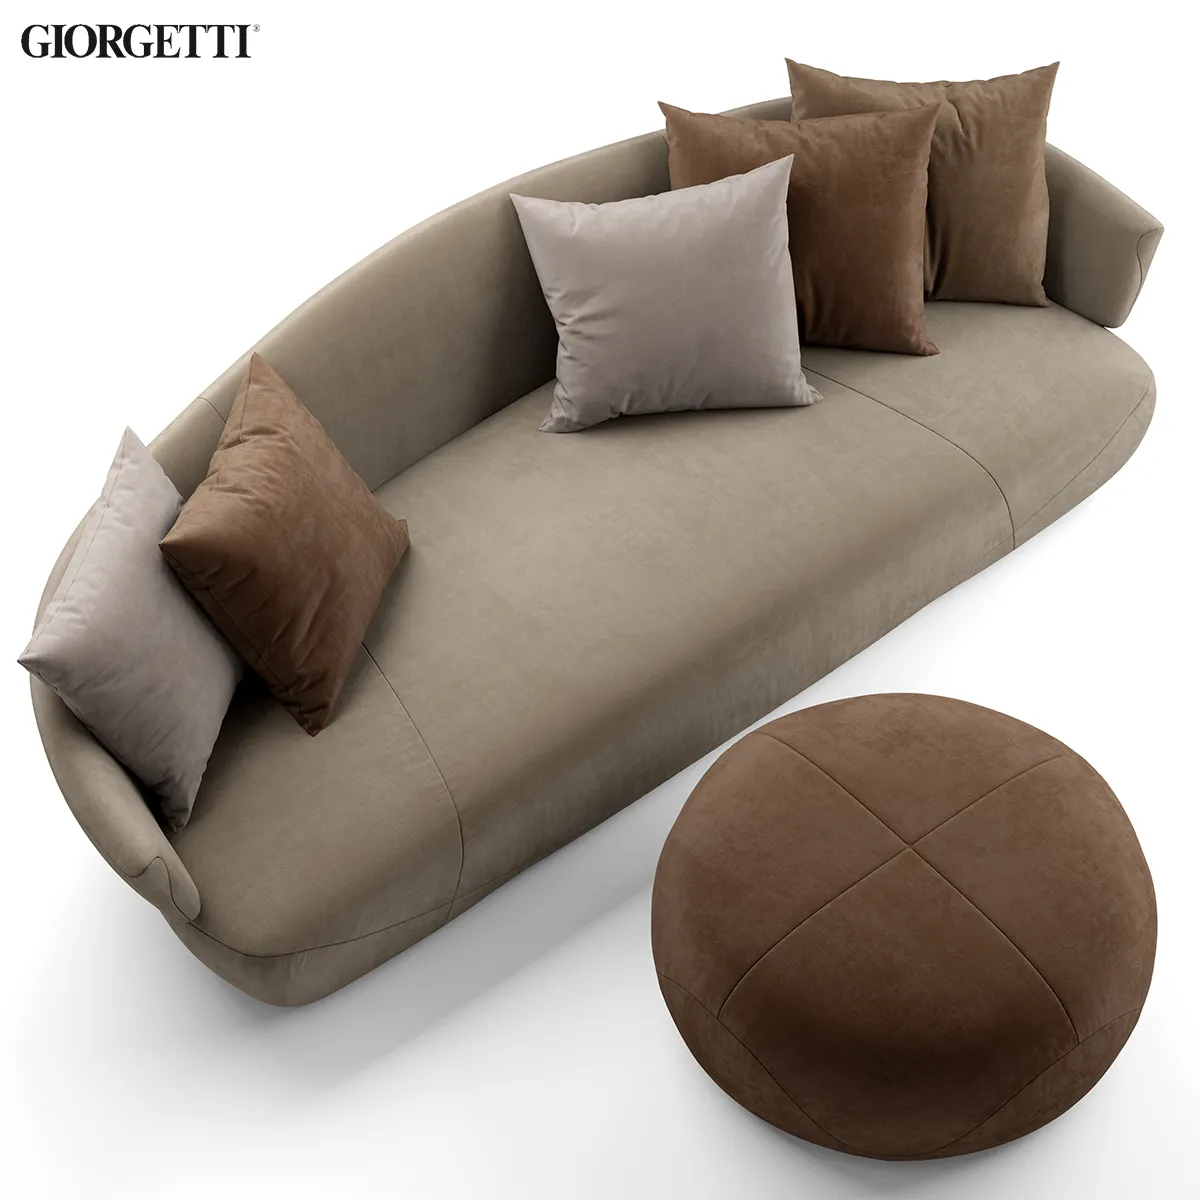 Sofa and pouf Giorgetti SOLEMYIDAESOLEMYIDAE – 225519